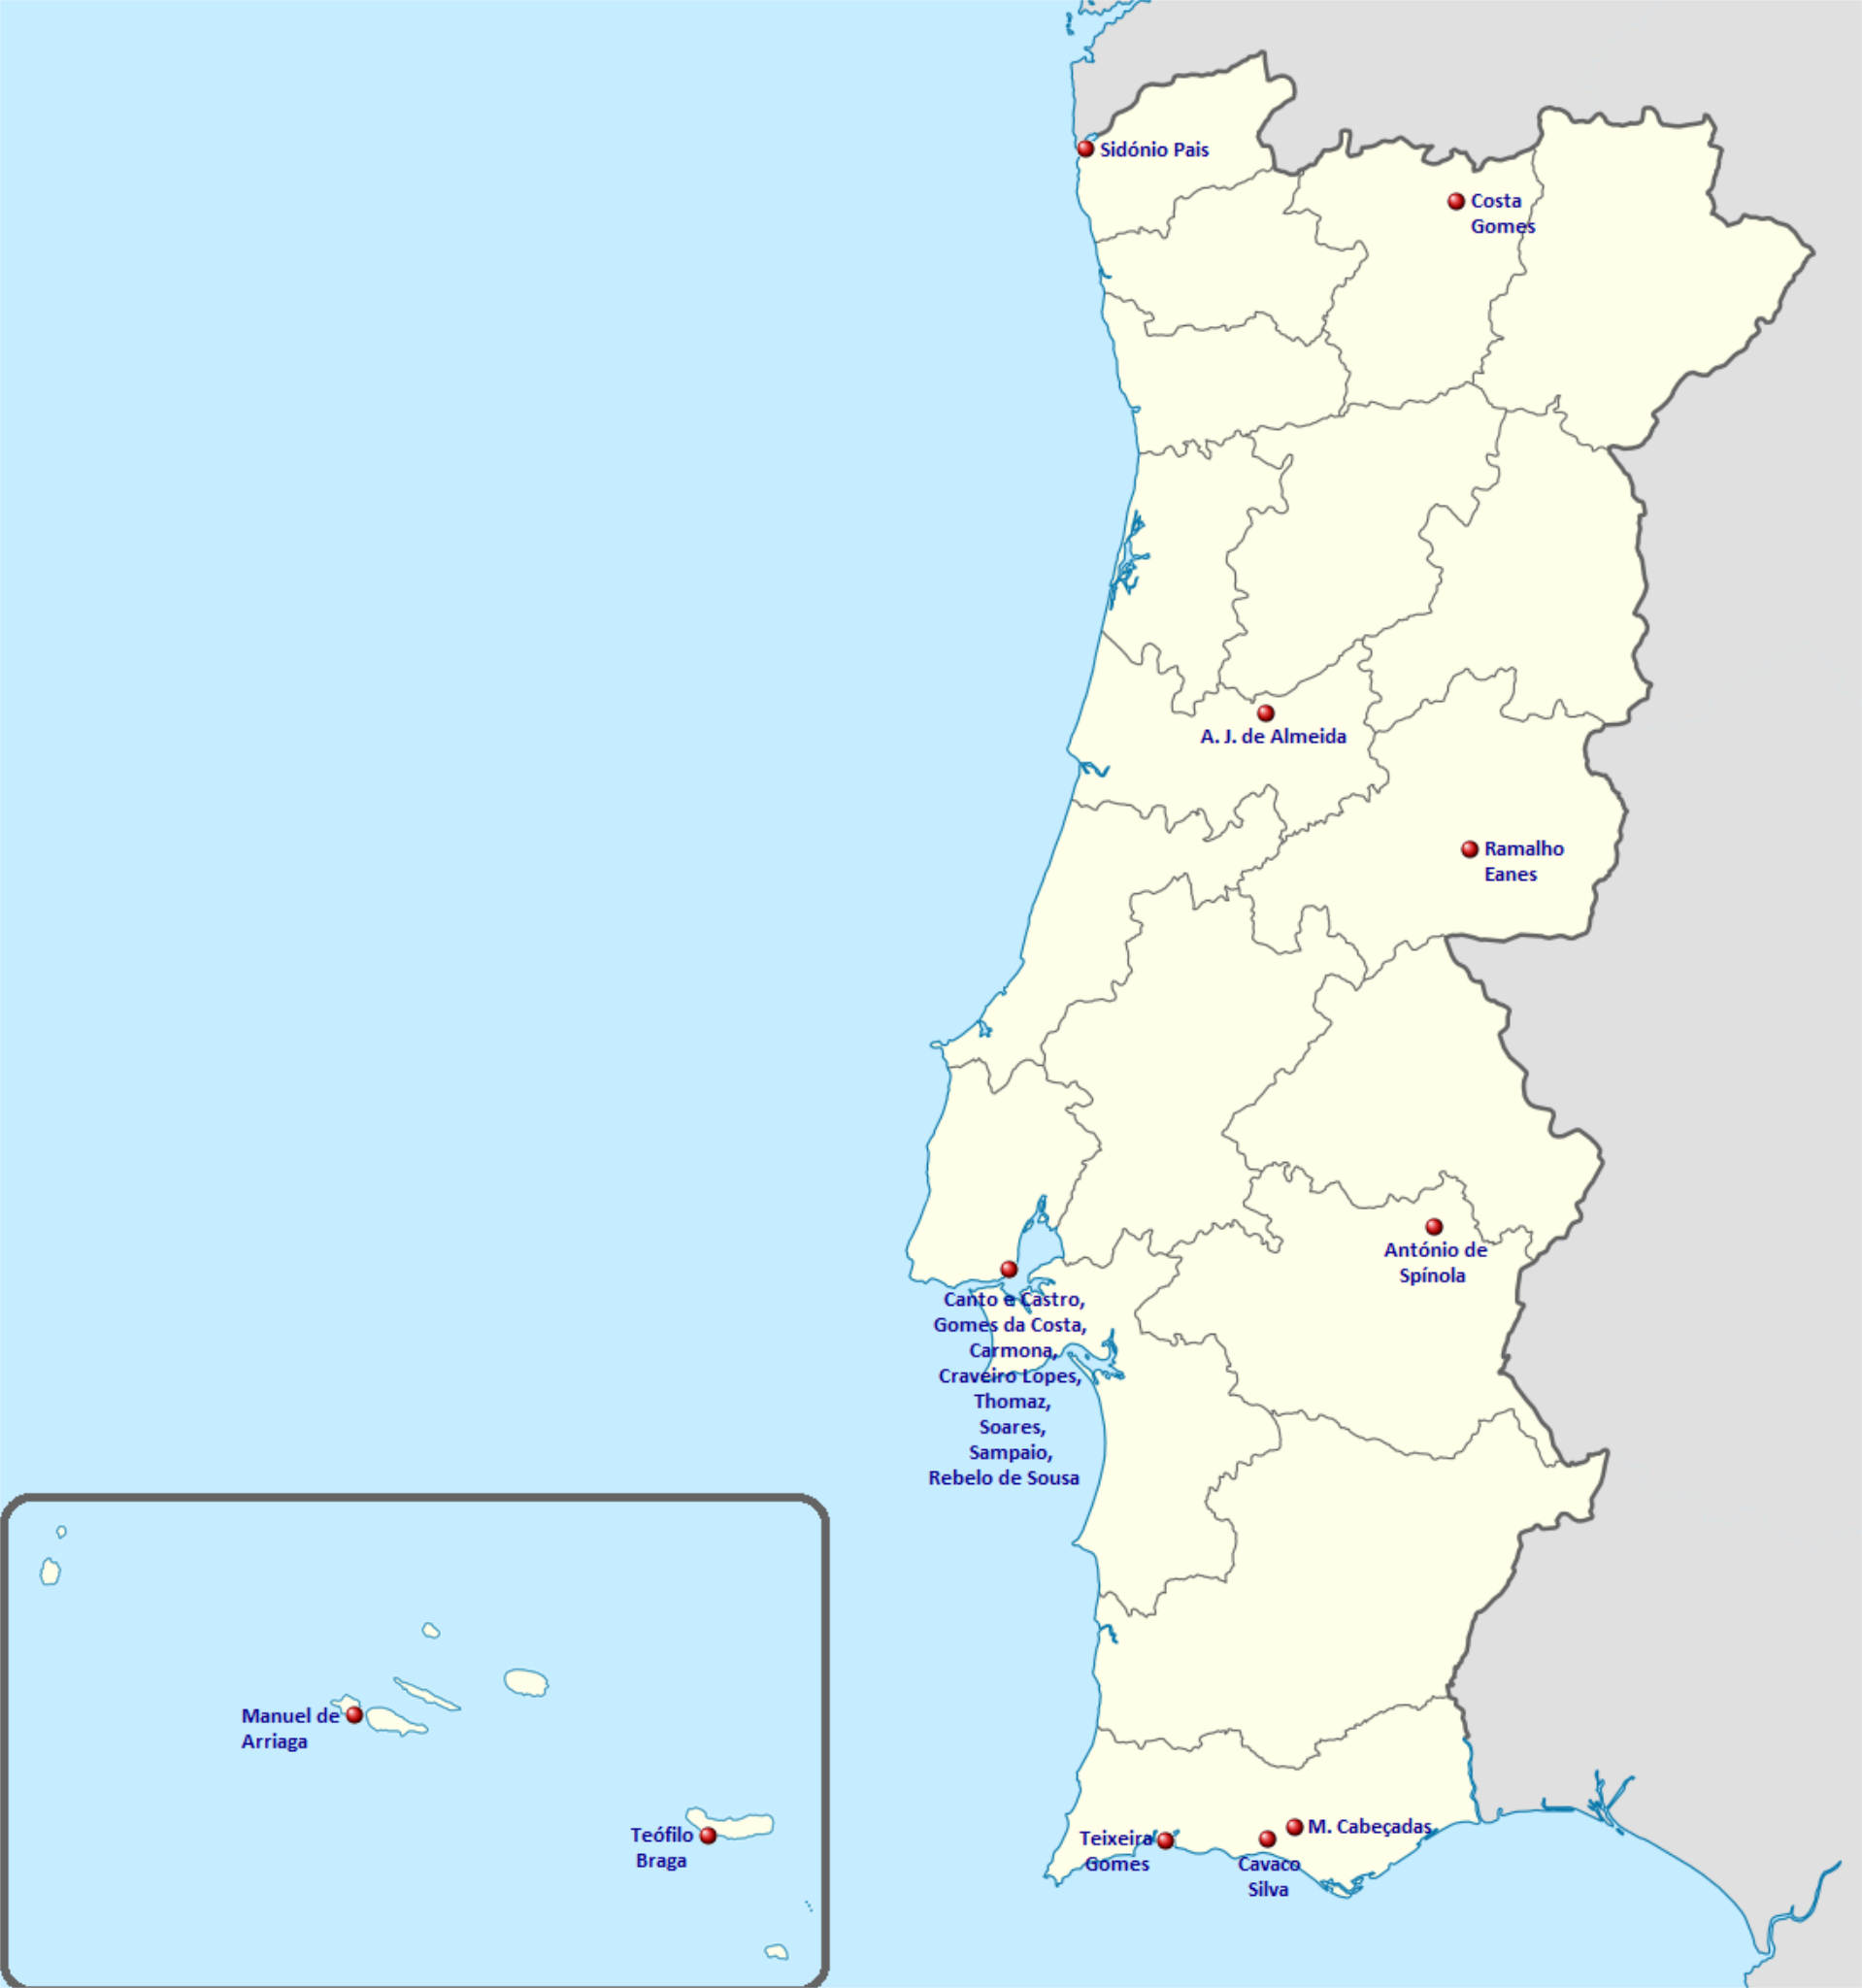 Mapa do Centro de Portugal, 1933, Título: Mapa do Centro de…